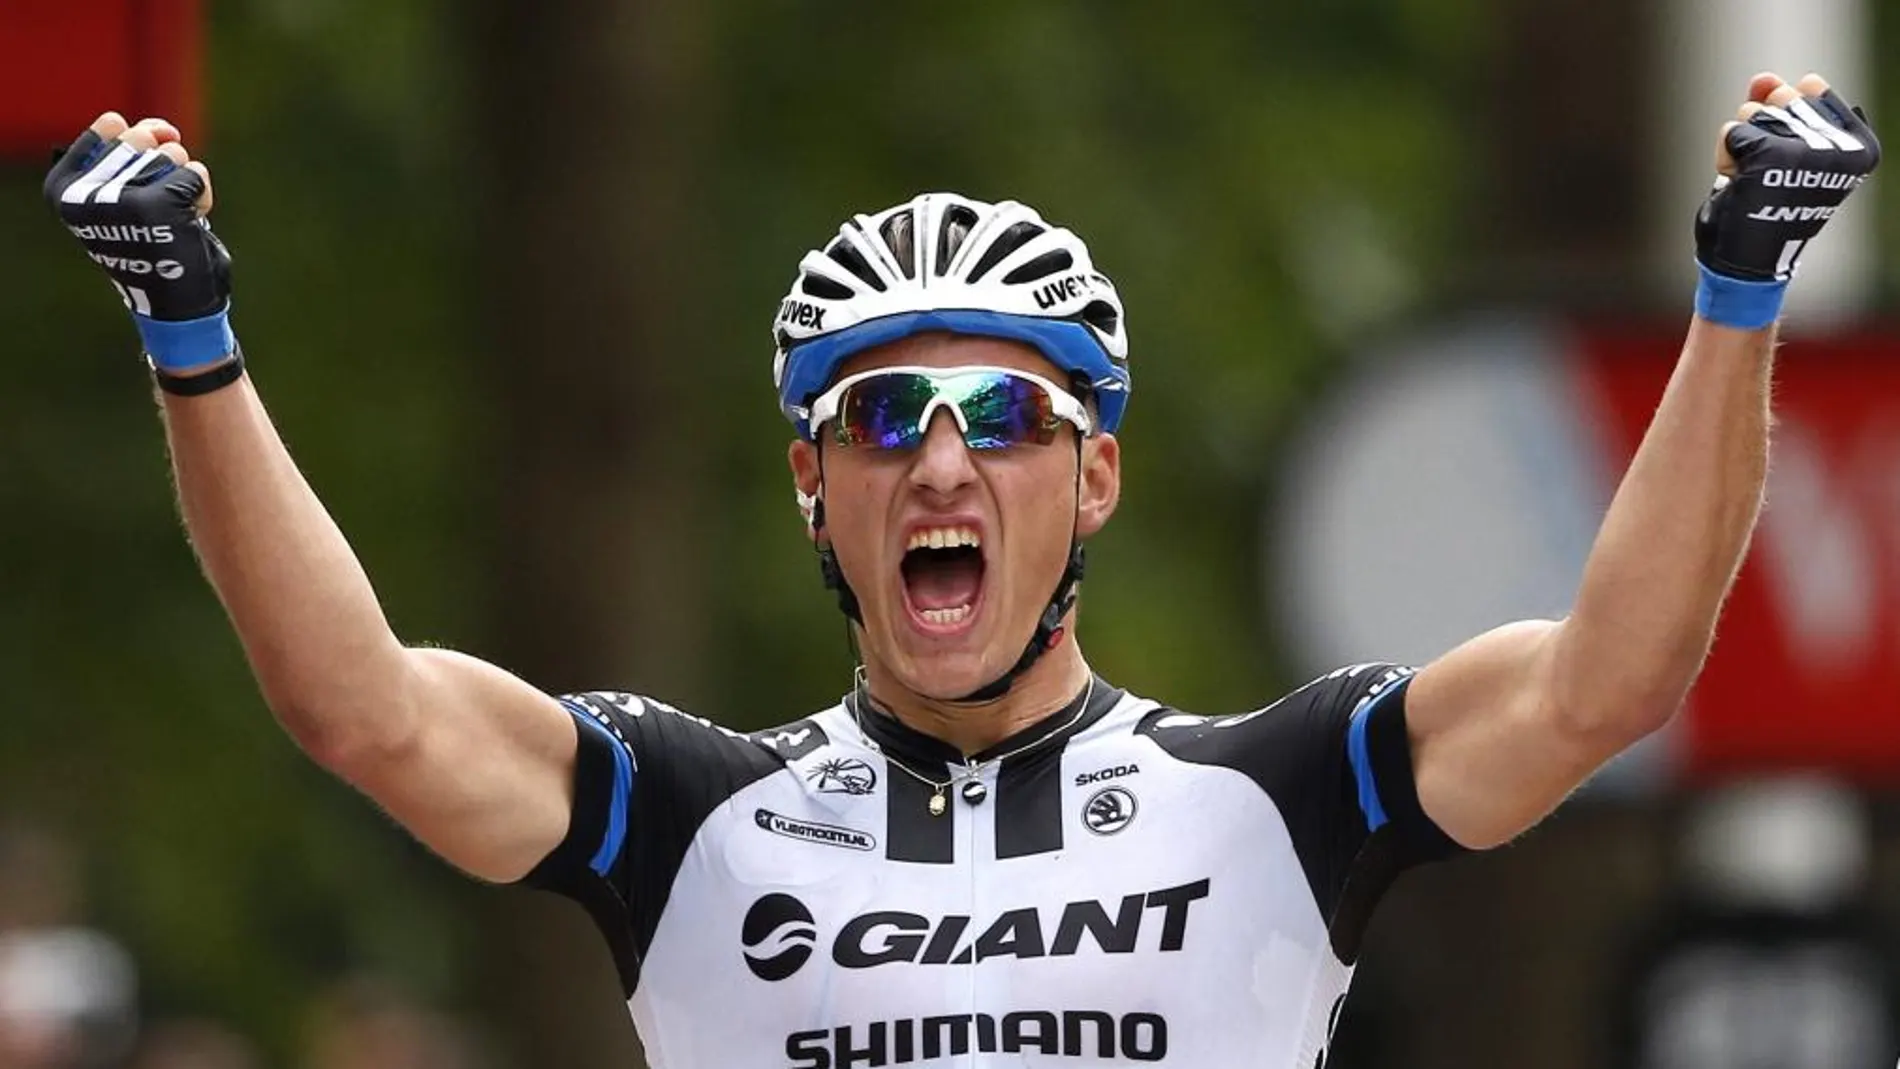 El ciclista alemán del equipo Giant Shimano Marcel Kittel celebra su victoria en la tercera etapa de la 101 edición del Tour de Francia